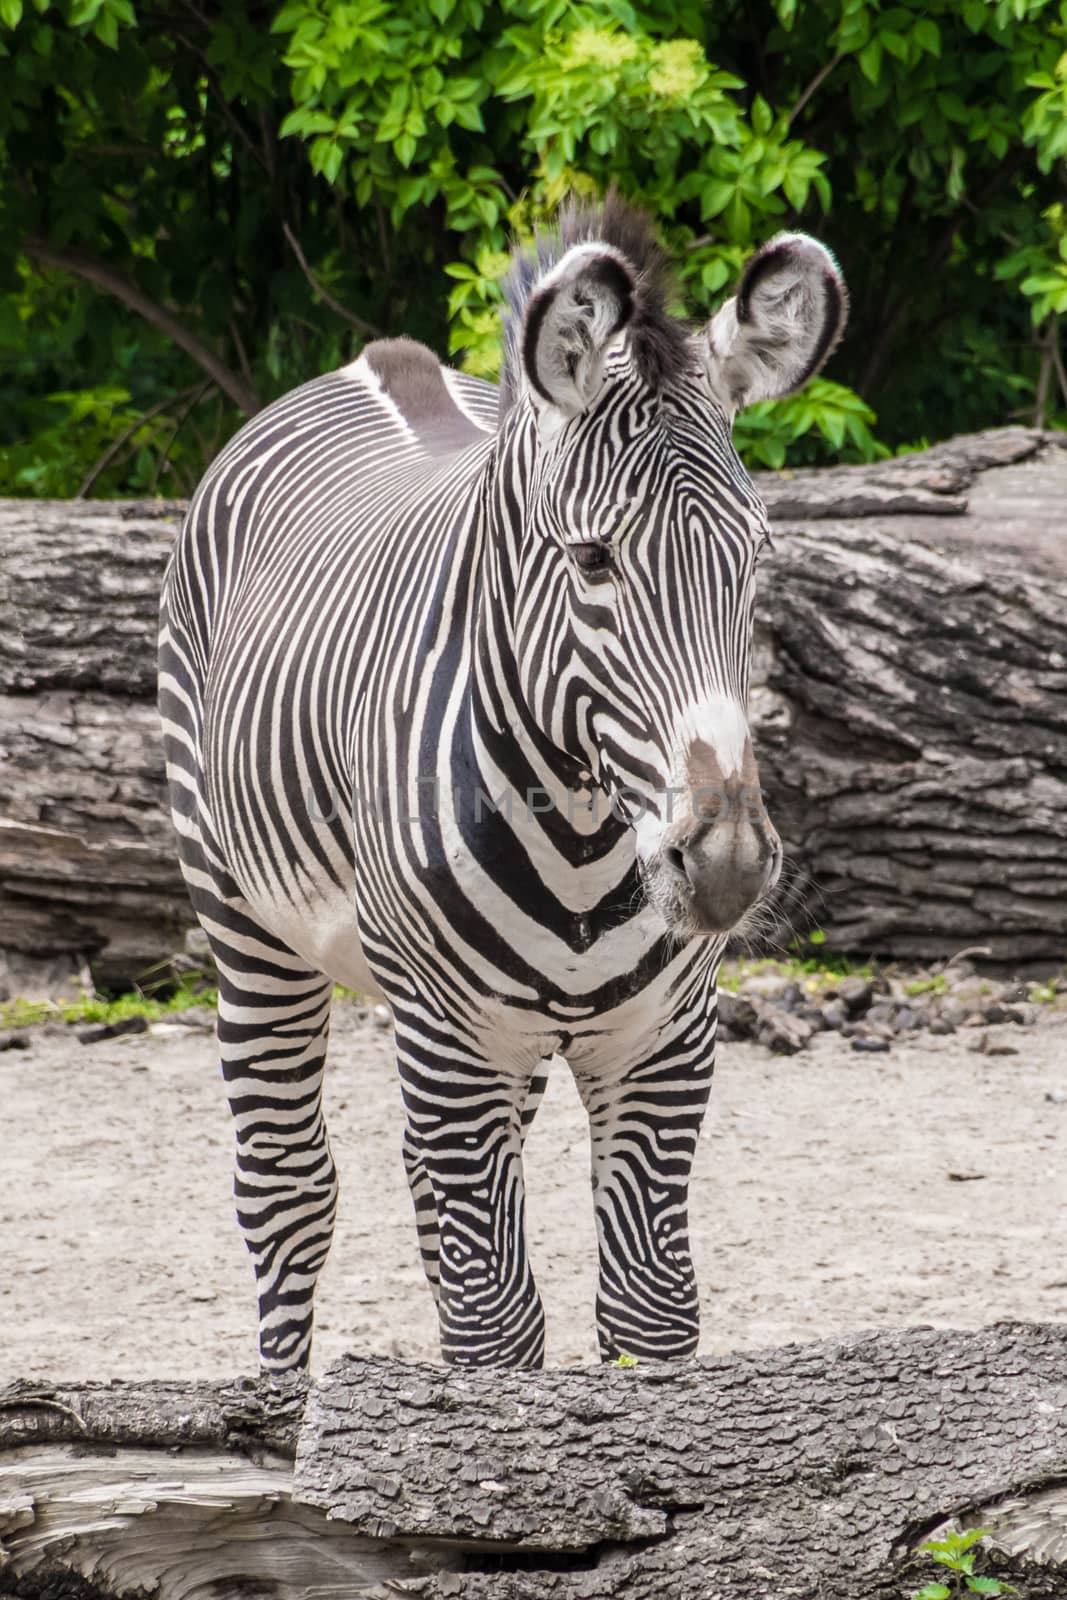 Zebra black and white fur big ears stripes